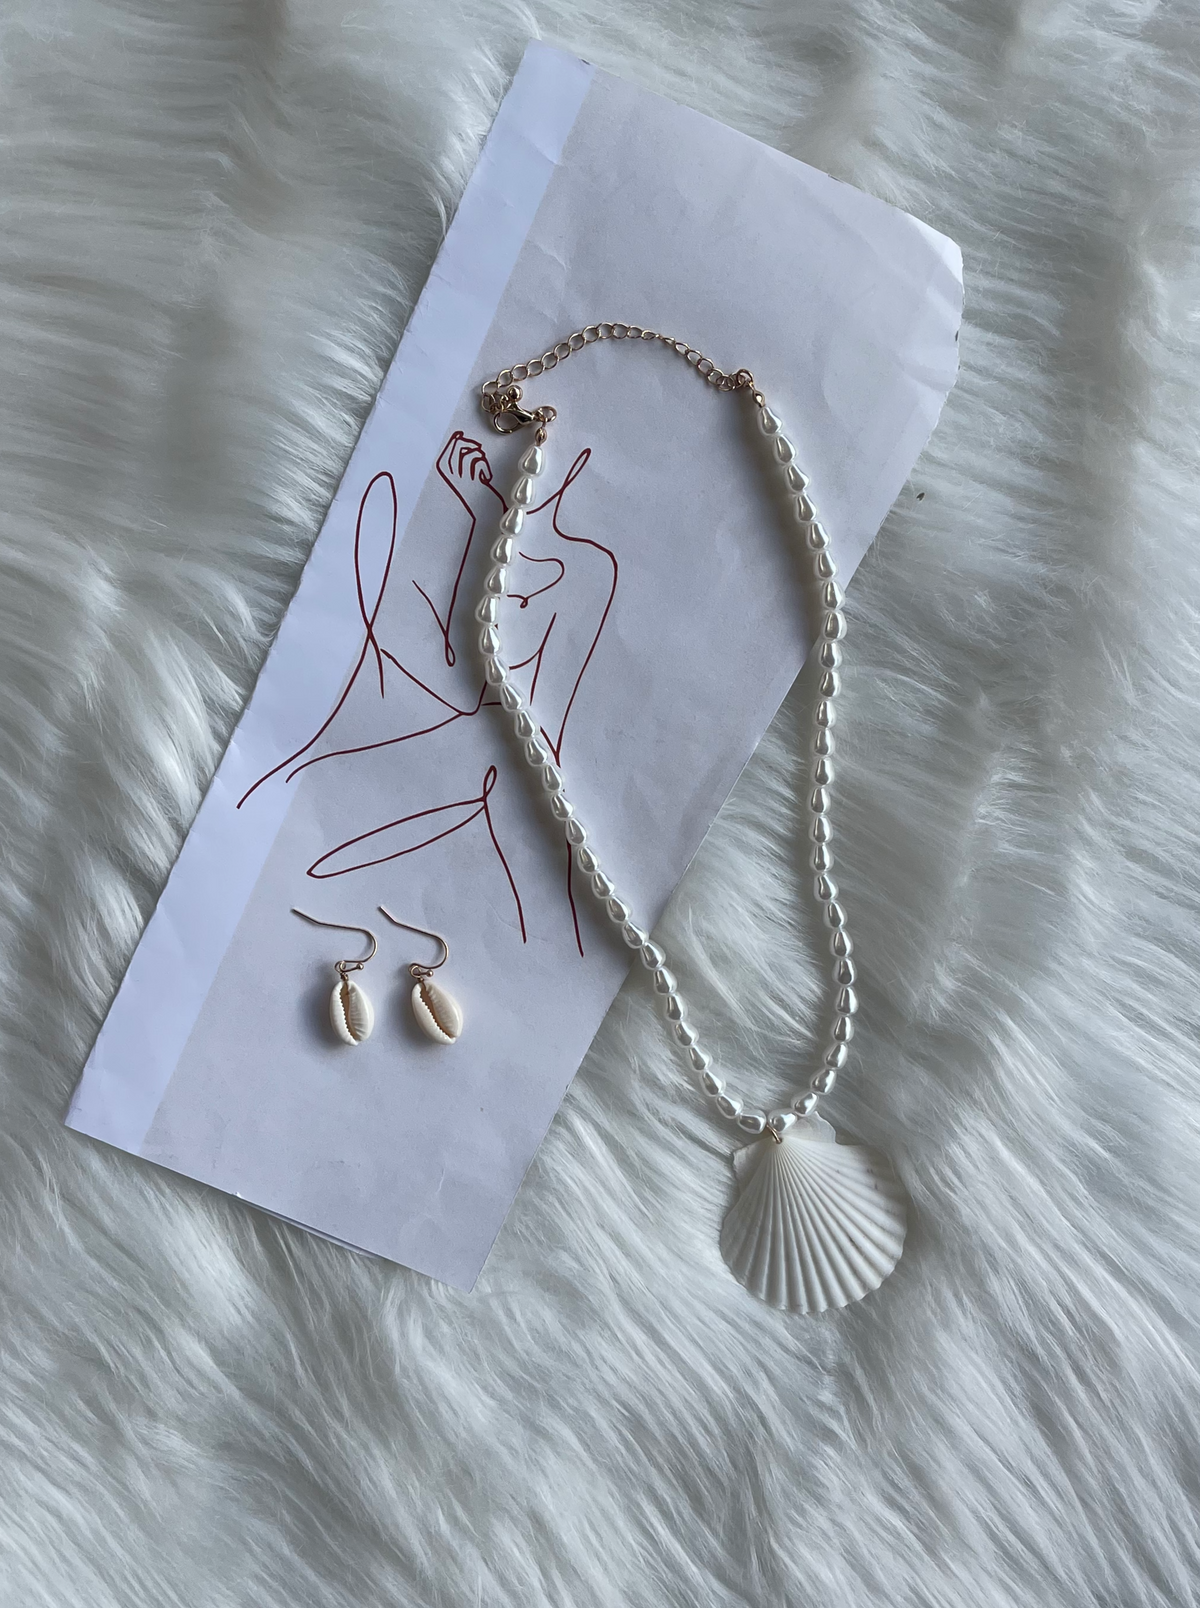 Seashell Necklace Set